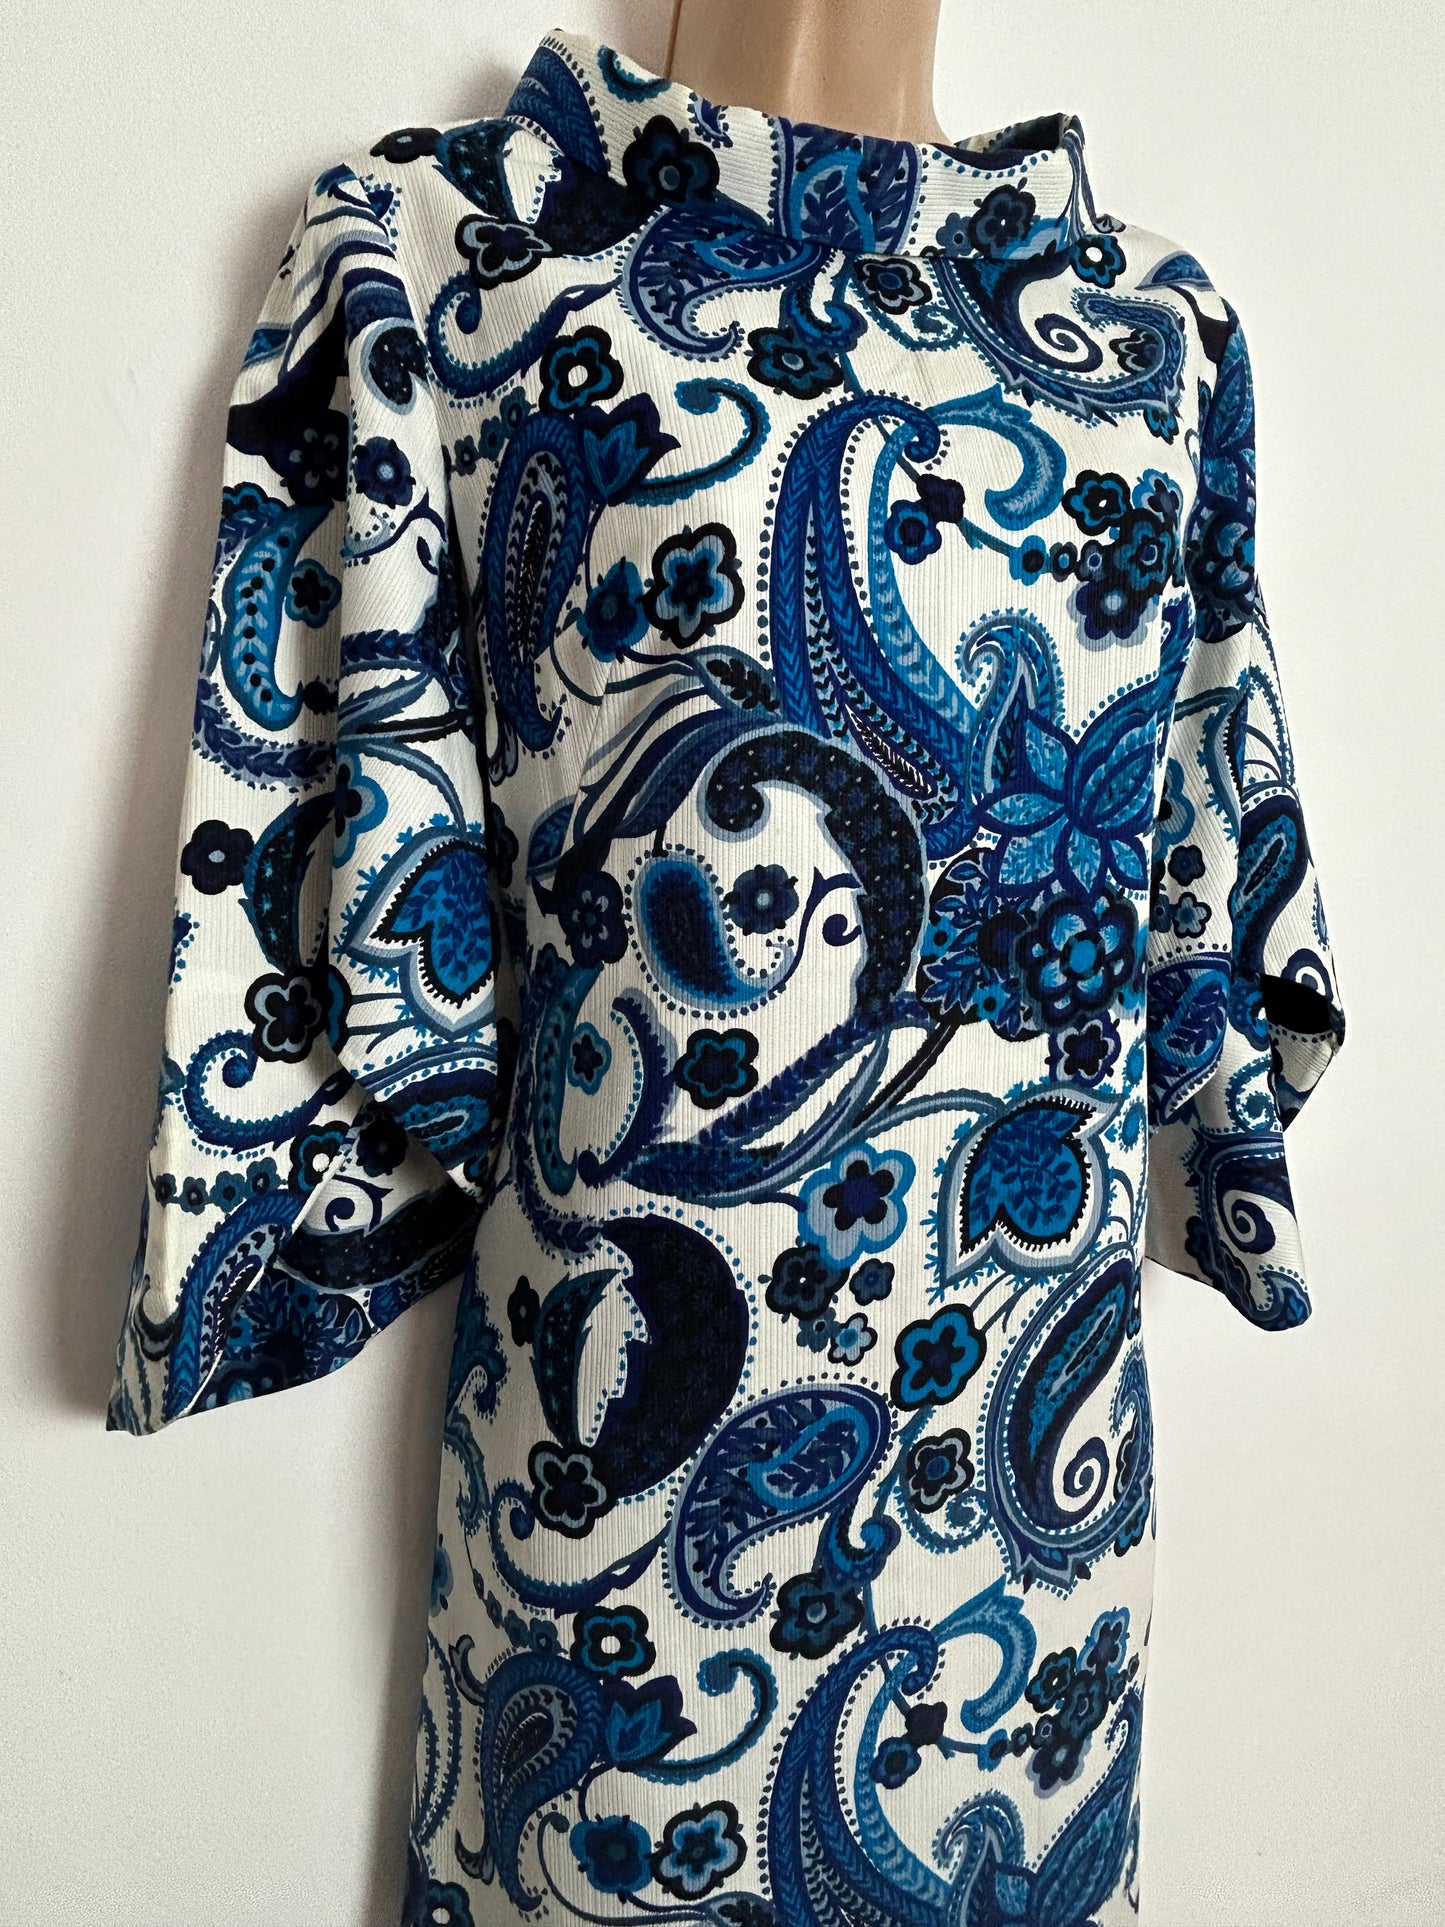 Vintage 1960s UK Size 10-12 Gorgeous White & Blue Nouveau Floral Print Wide Sleeve Kaftan Style Midaxi Dress